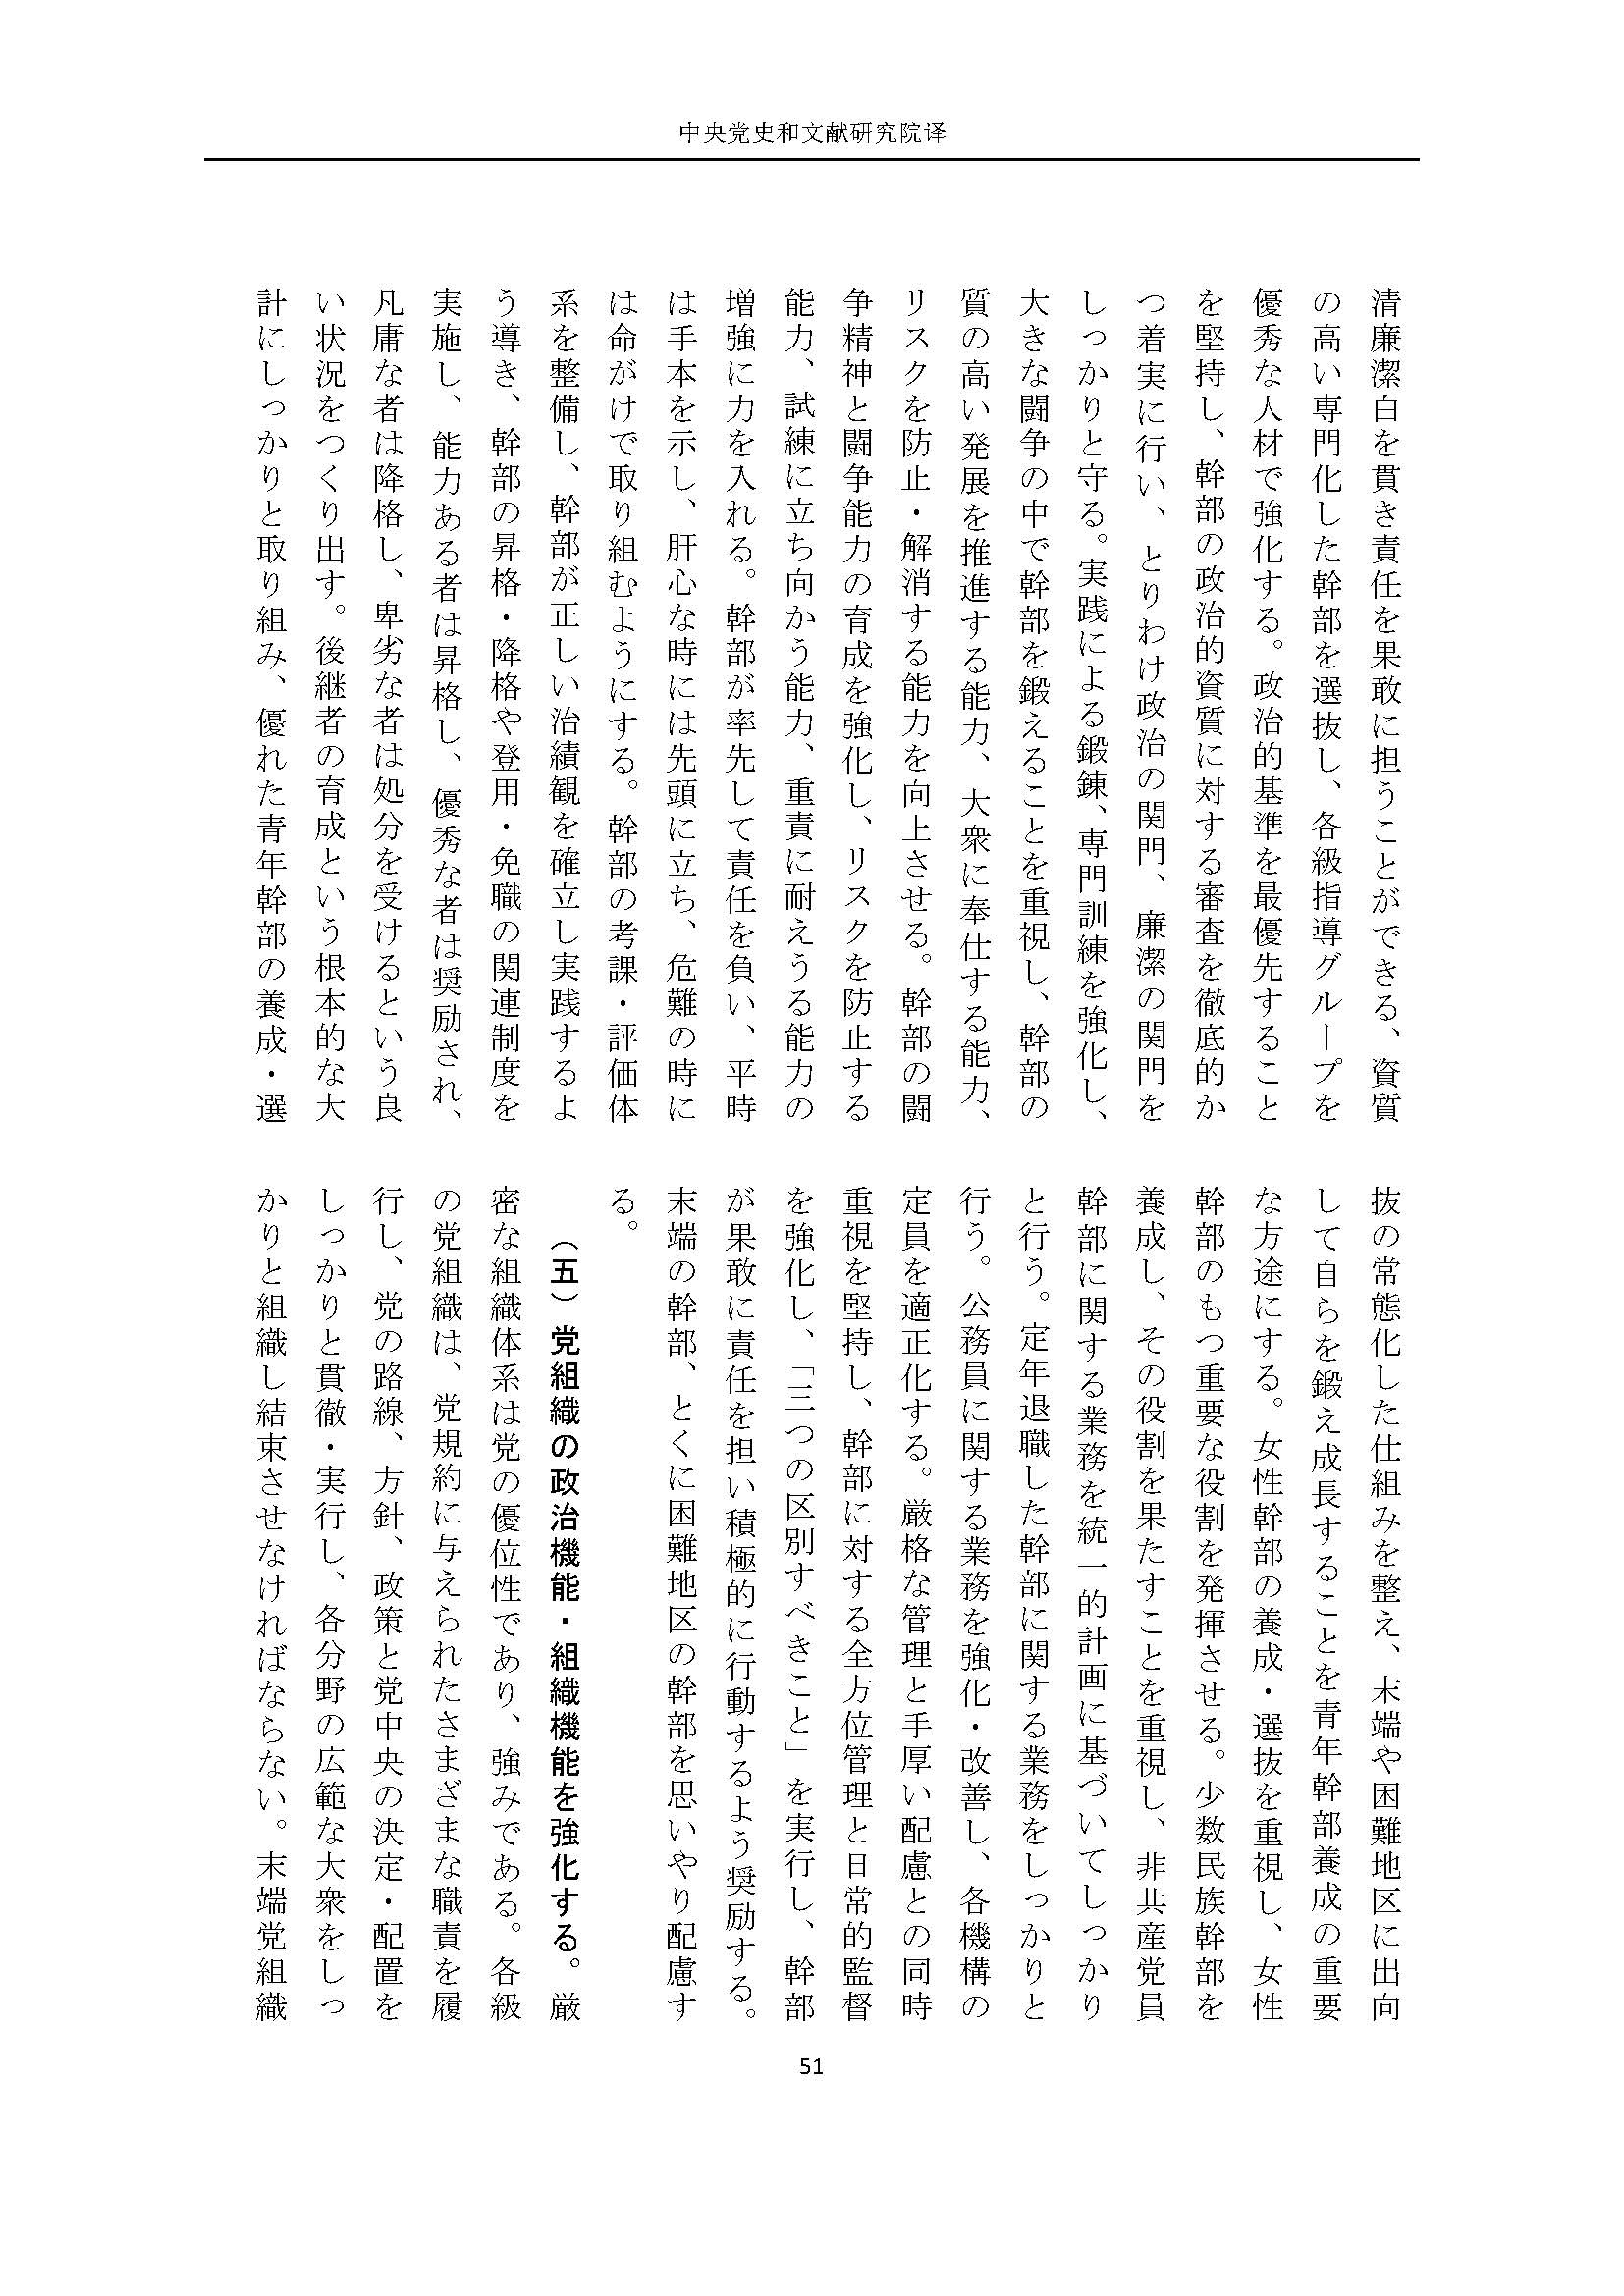 二十大报告（日文全文）_页面_52